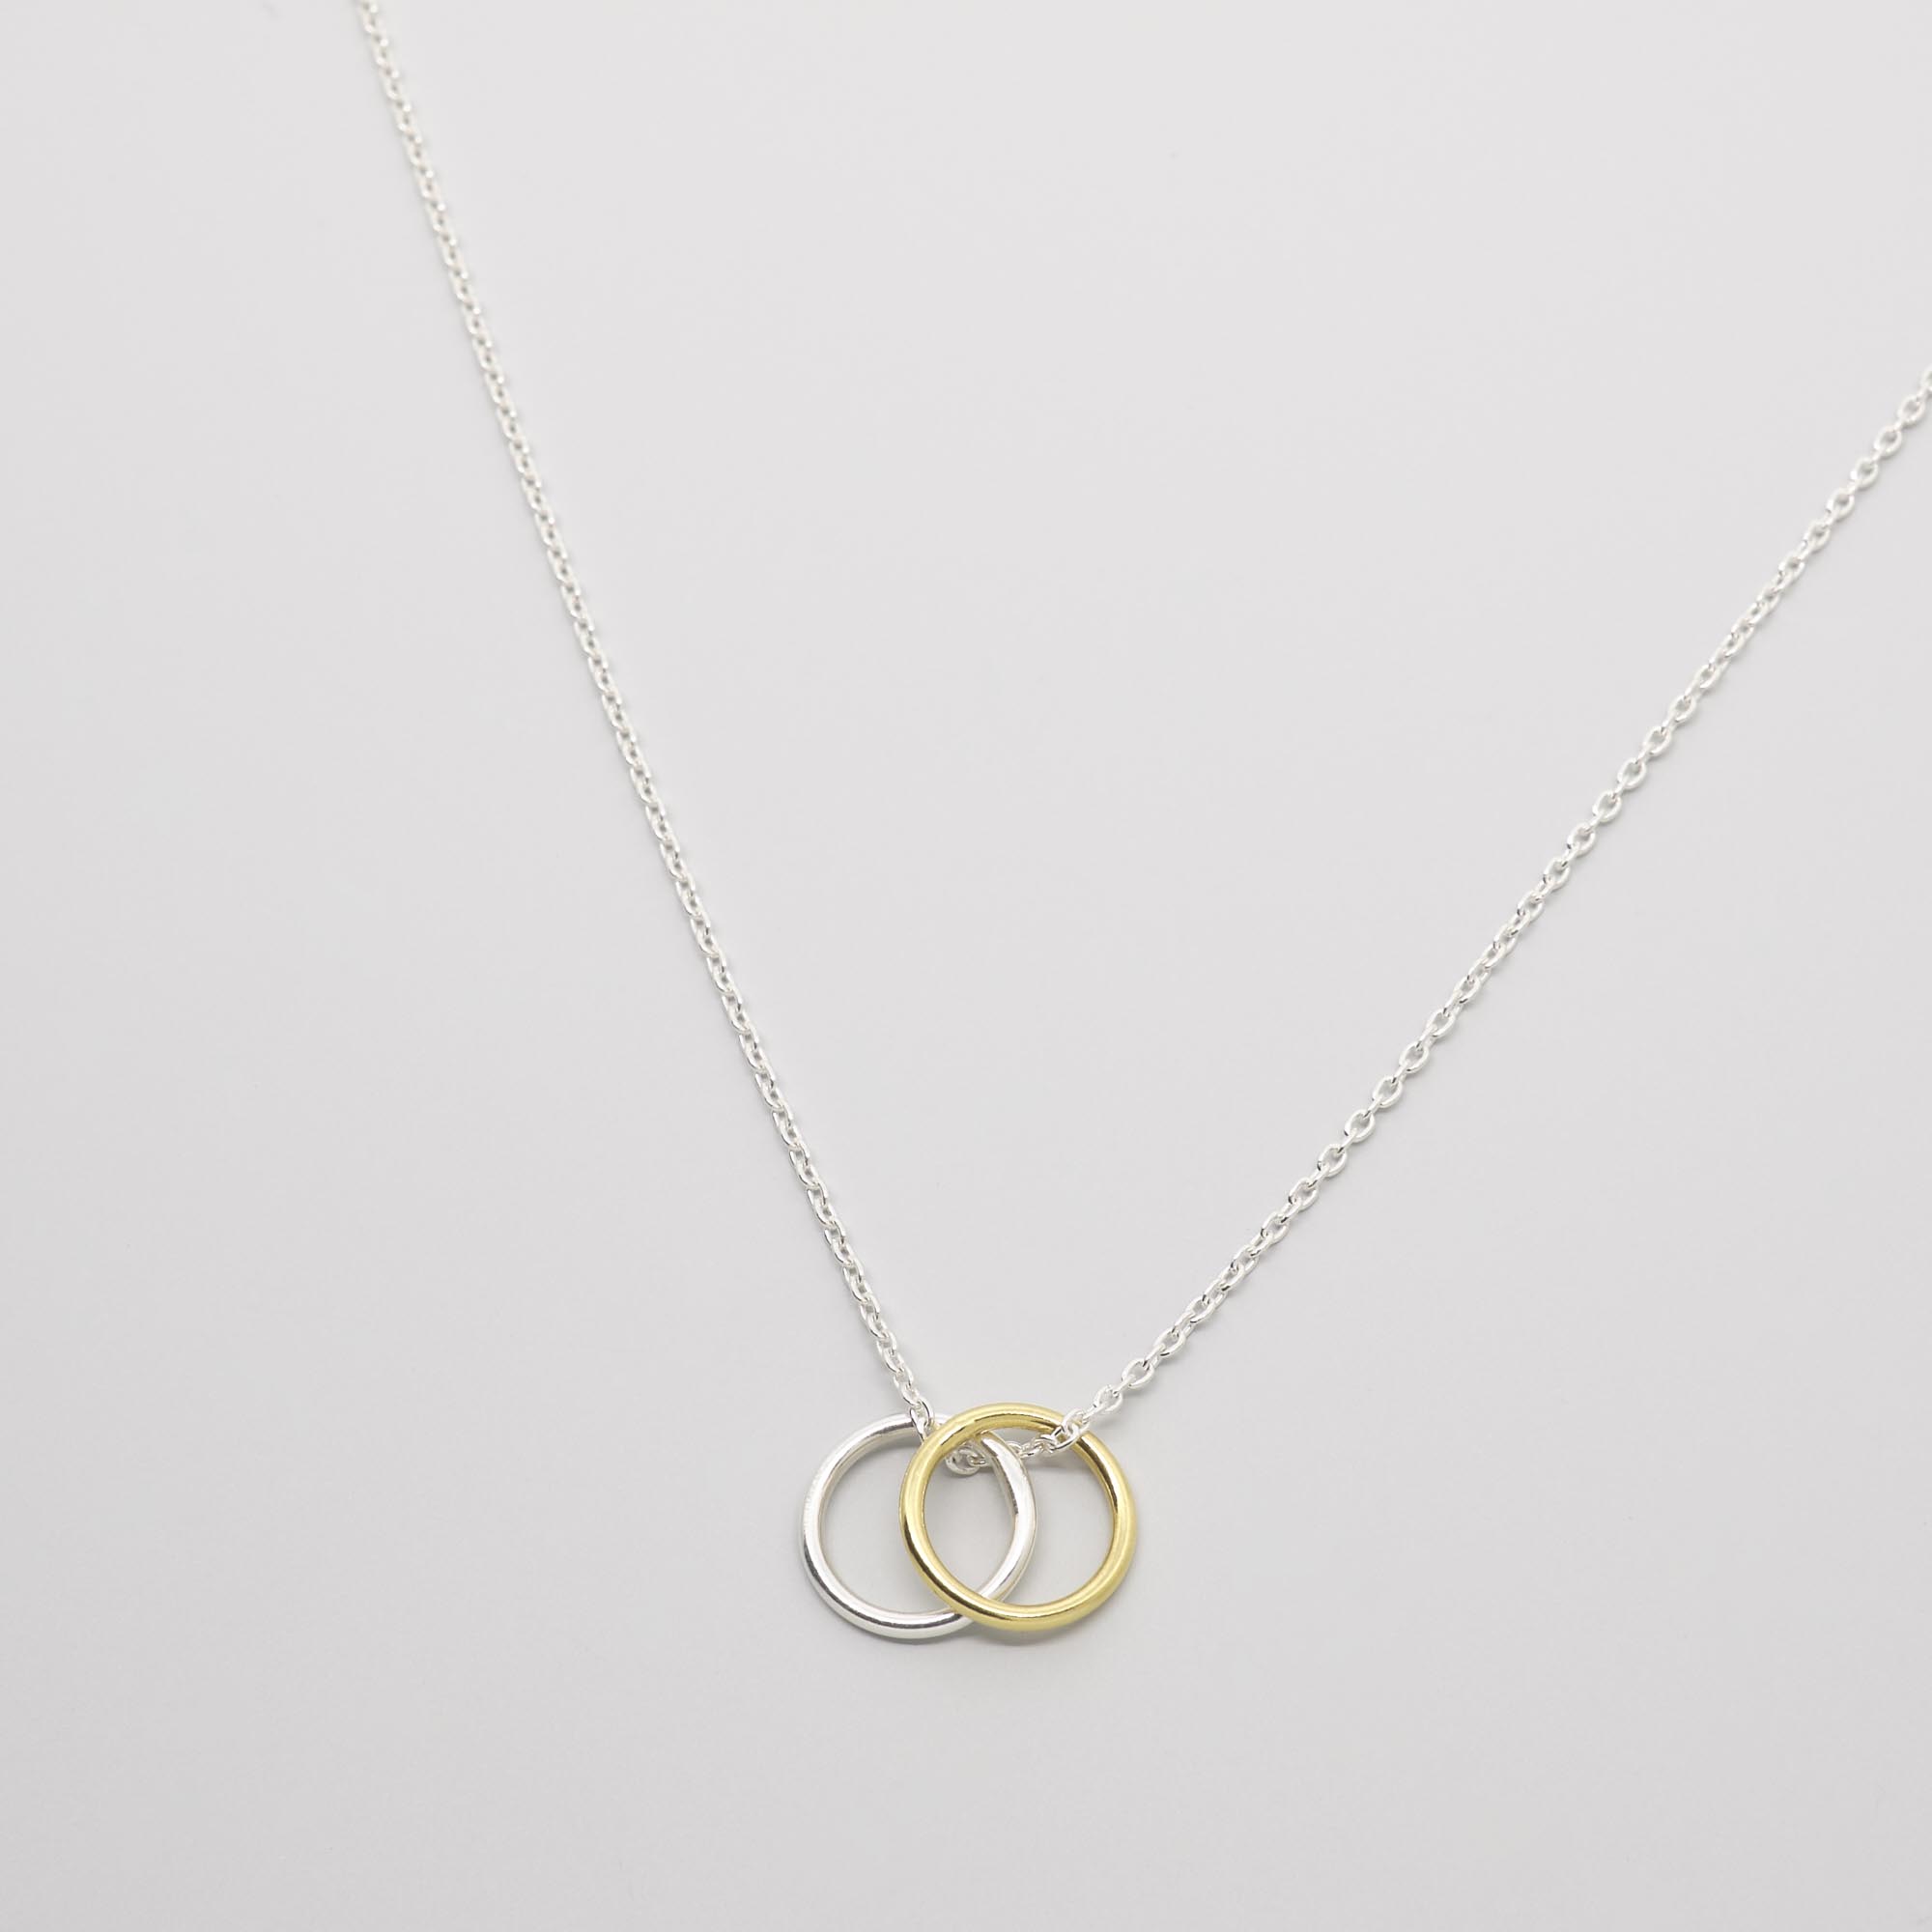 Kette bicolor gold mit zwei Ringen, nachhaltig aus recyceltem Silber